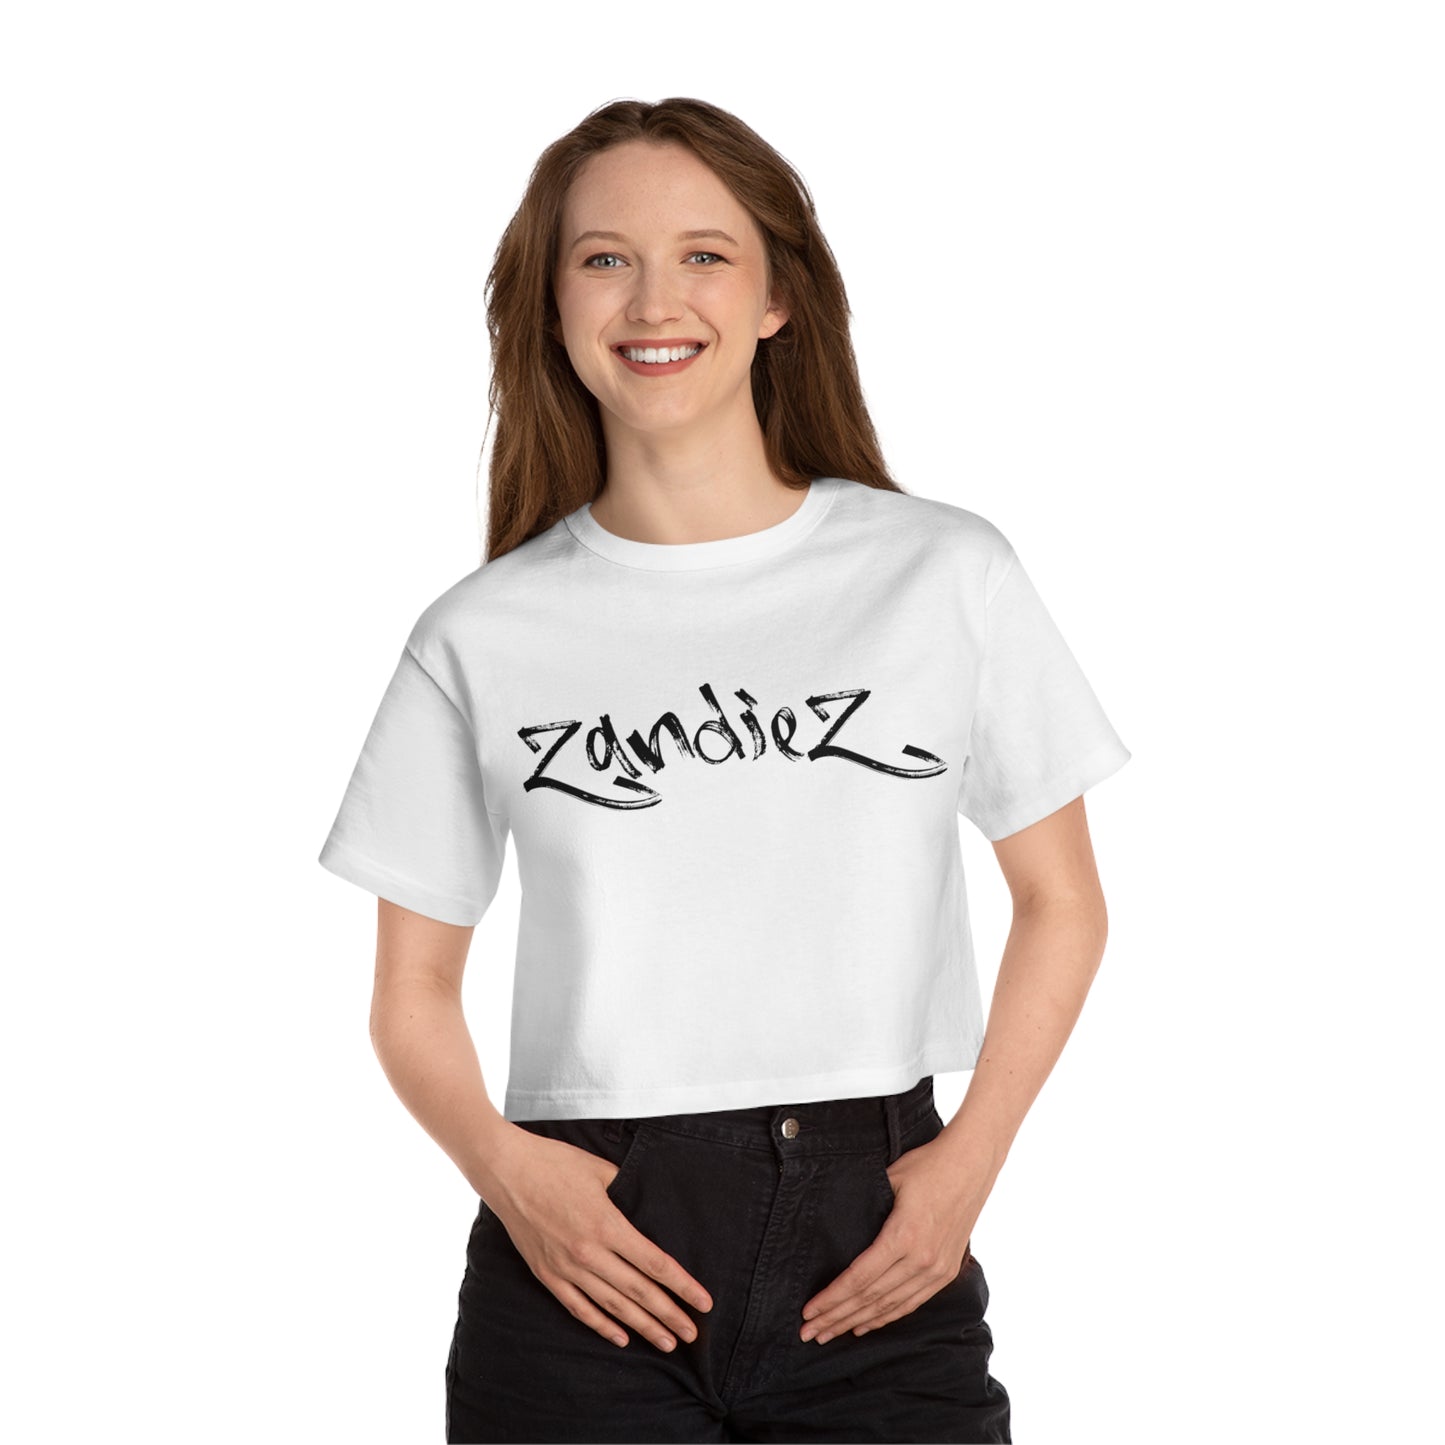 Zandiez - Champion Women's Heritage Cropped T-Shirt